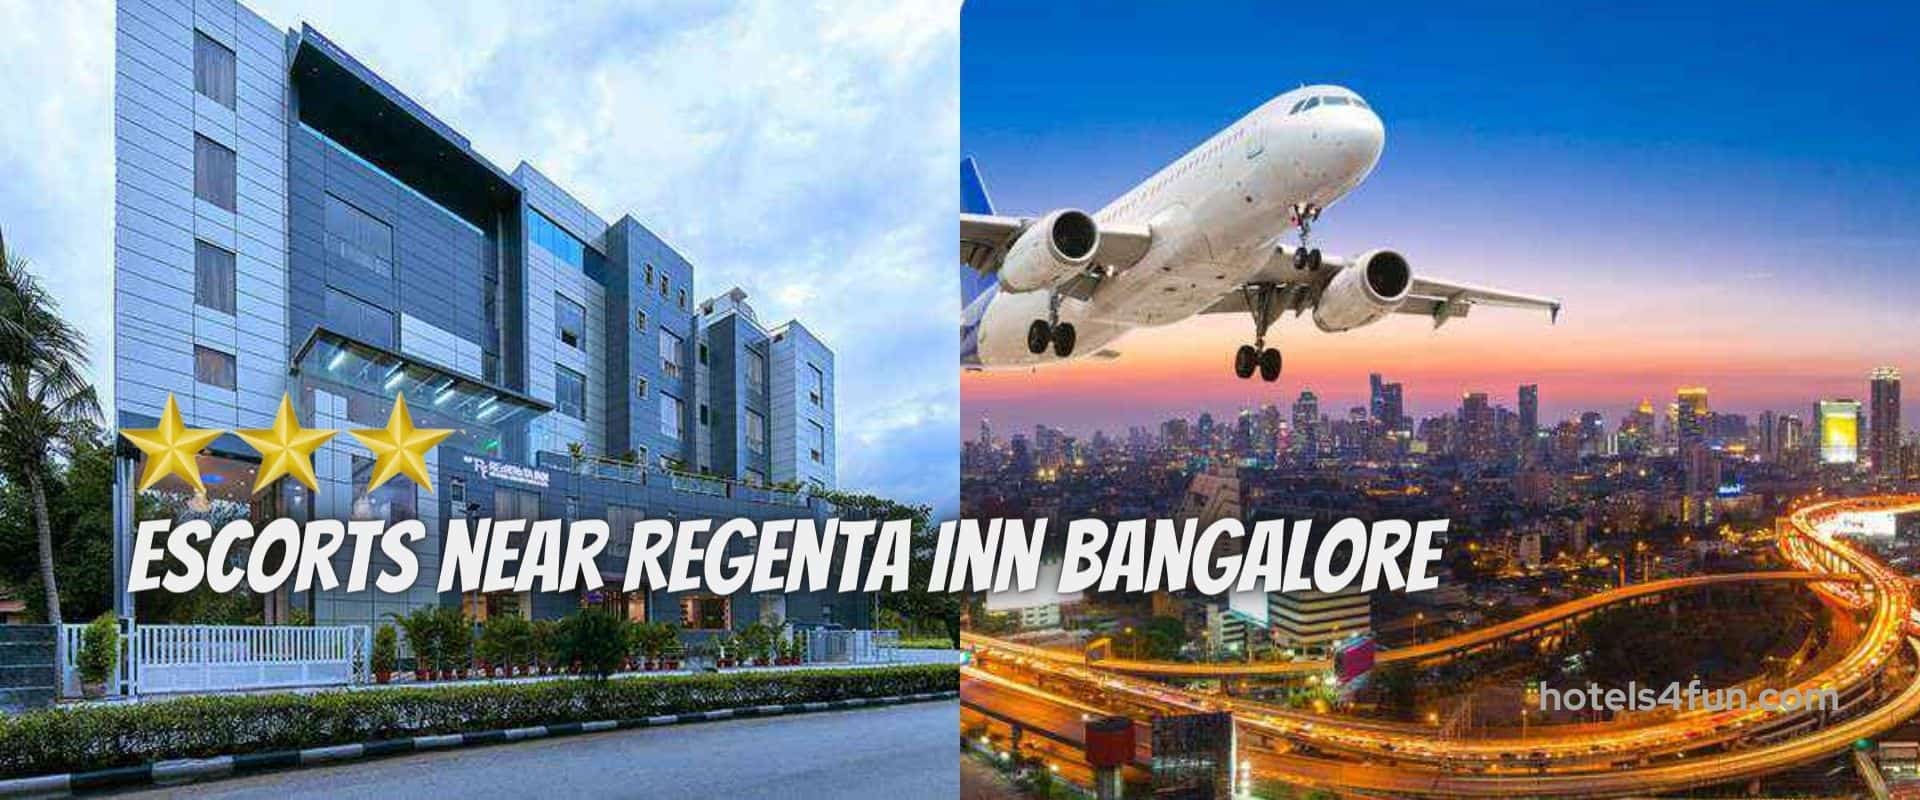 Regenta INN Hotel Bangalore